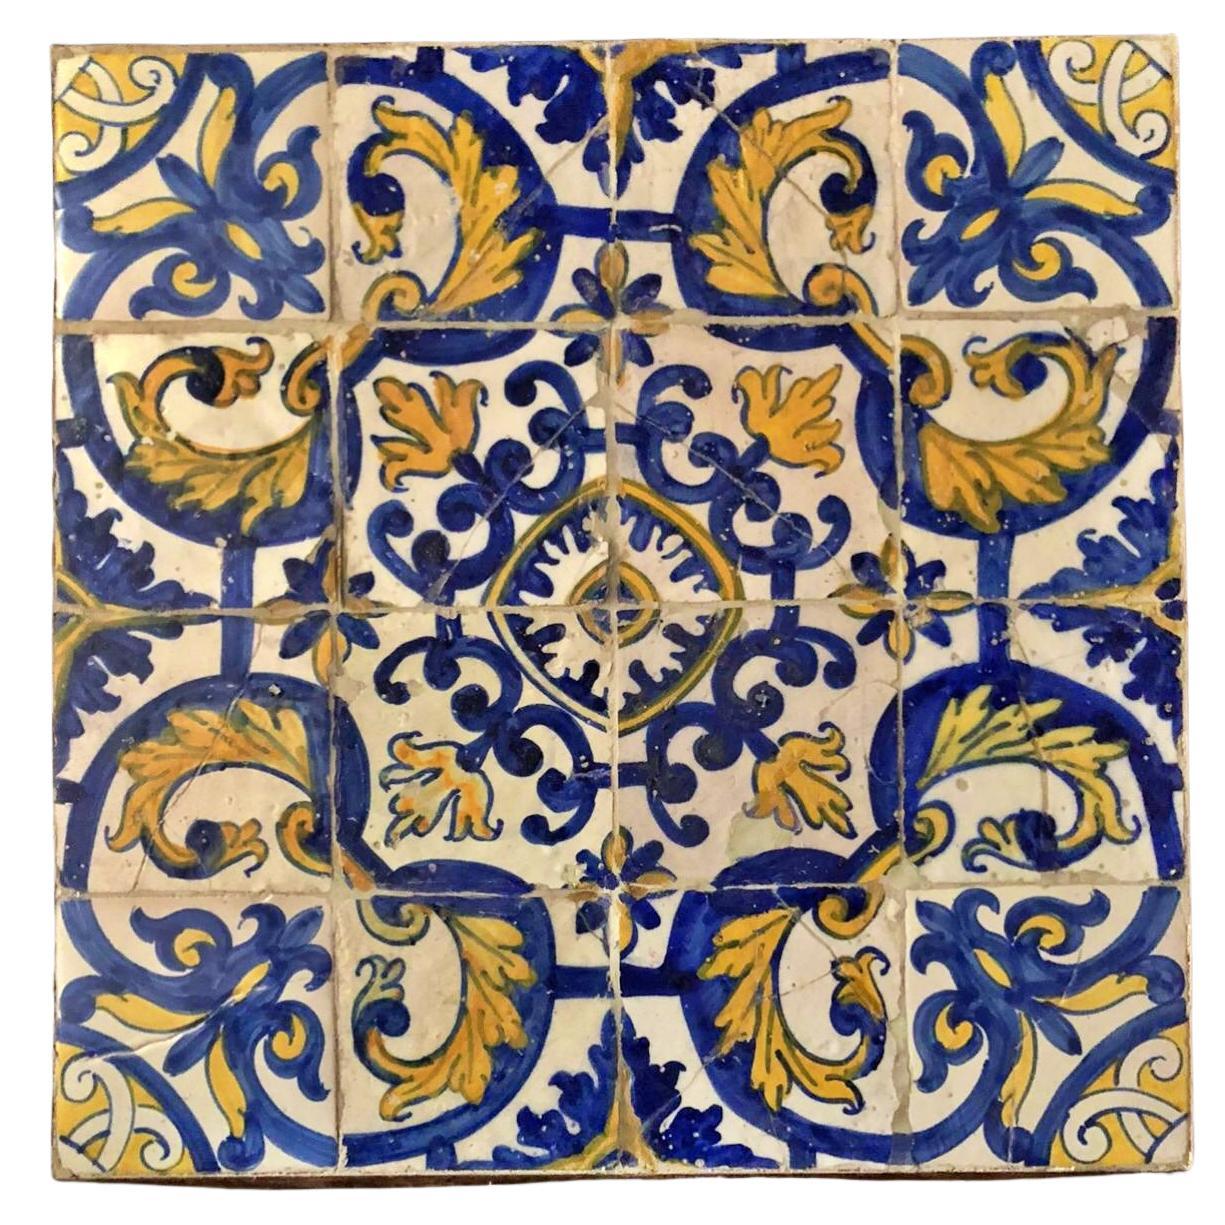 Panneau de carreaux portugais du XVIIe siècle